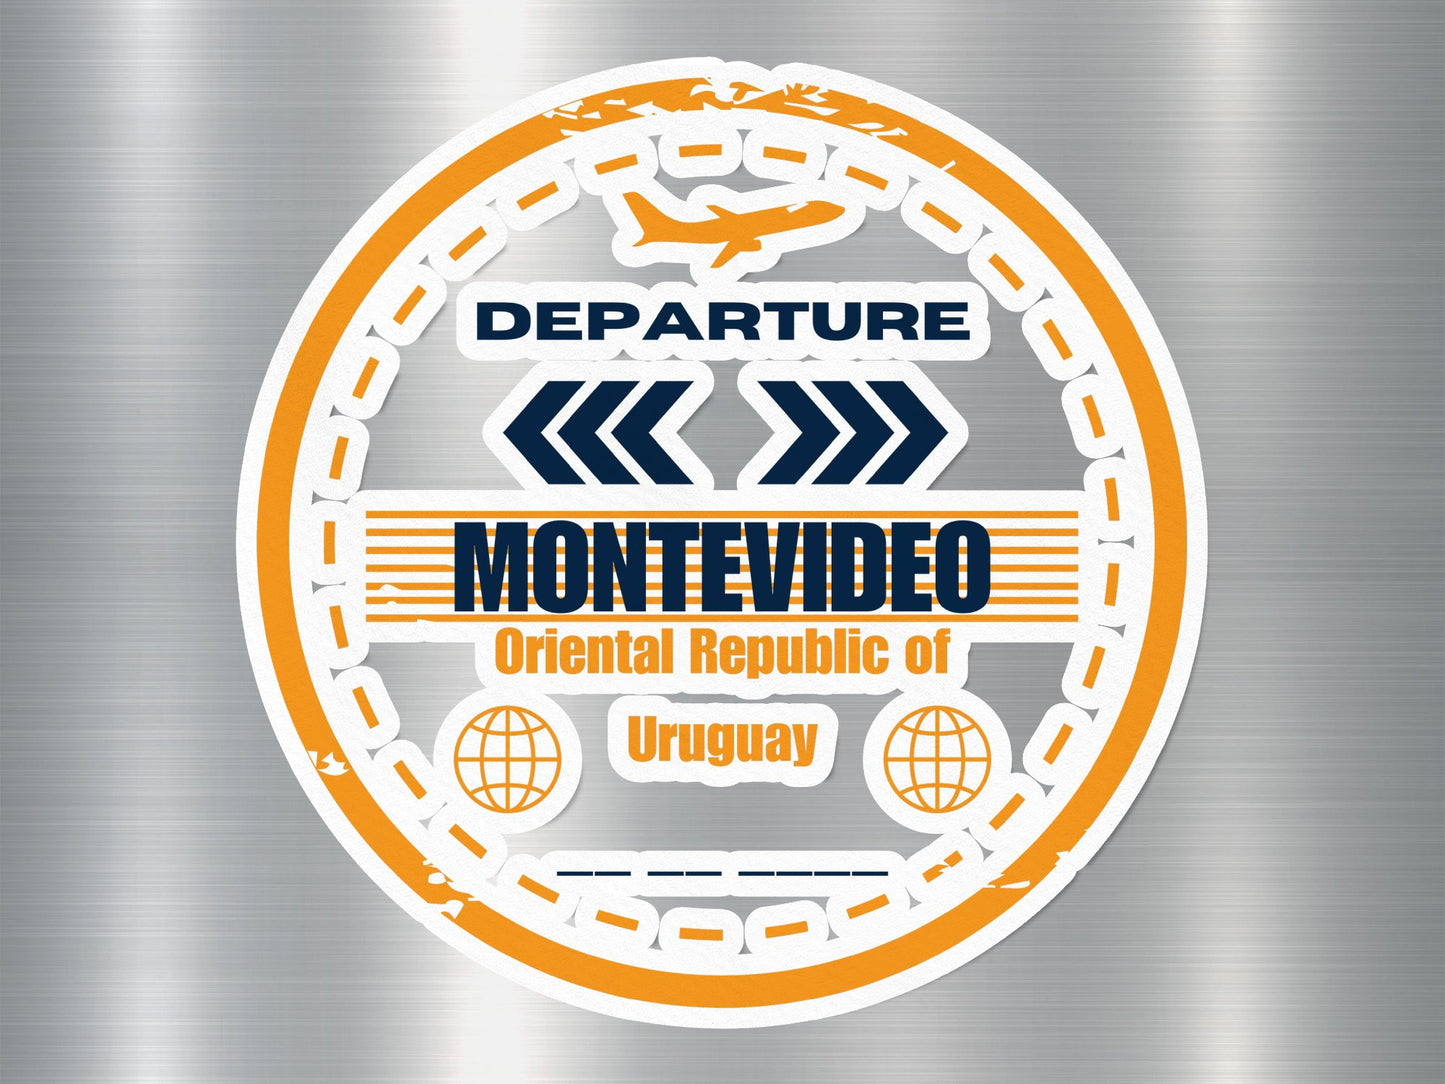 Montevideo Departure Travel Stamp Sticker